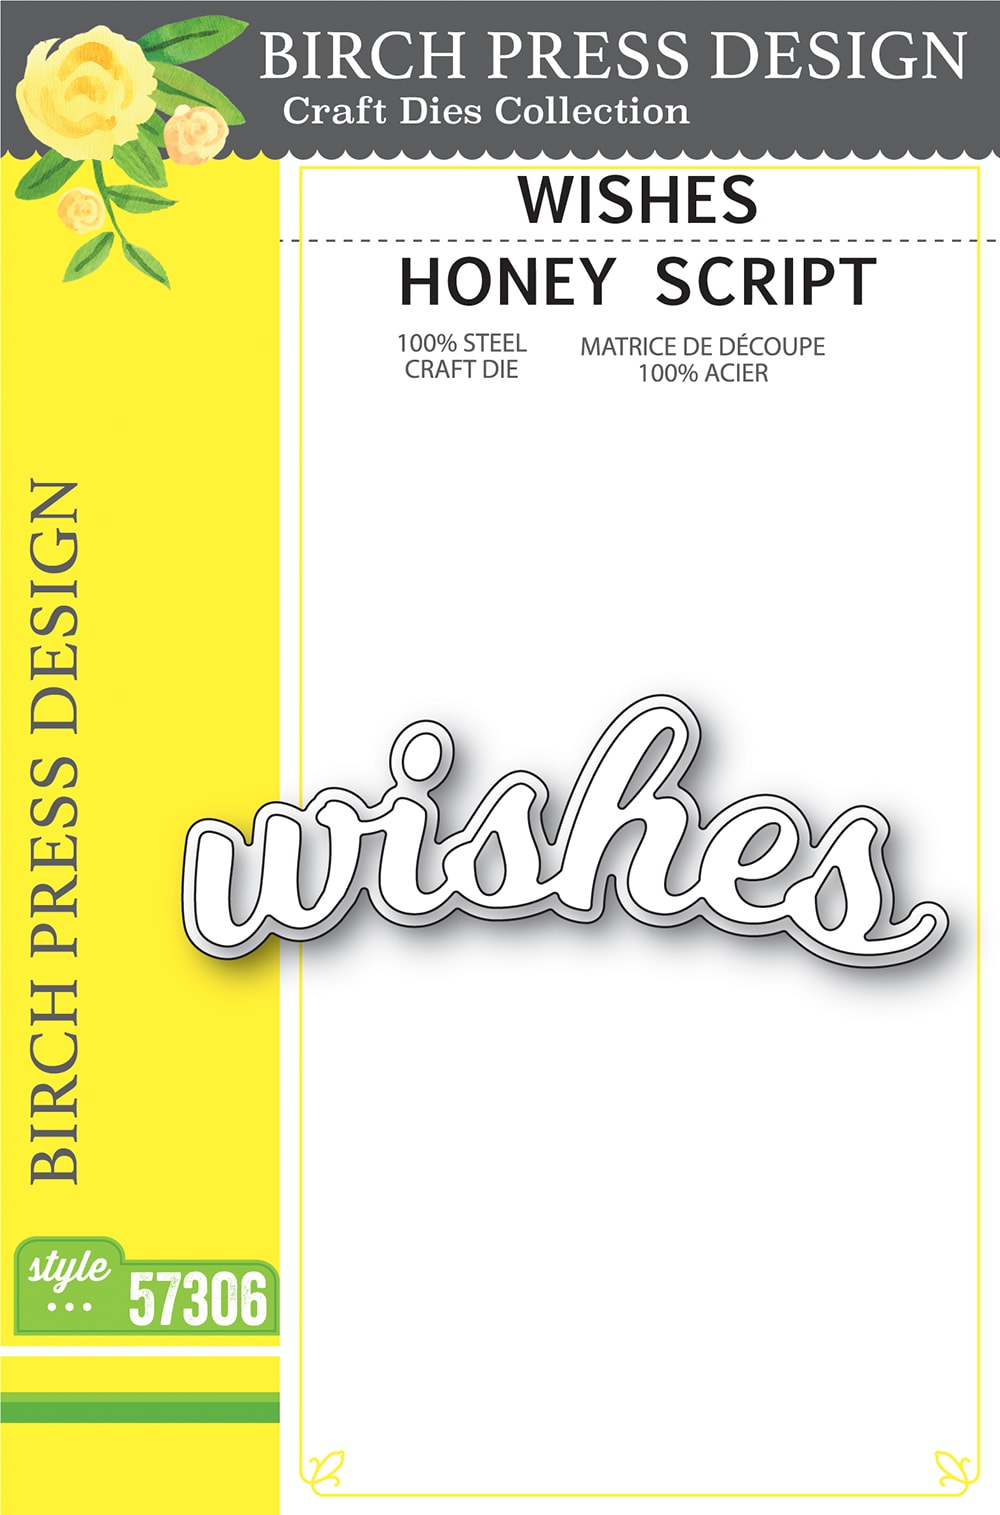 Birch Press Design - Wishes Honey Script - Style 57306